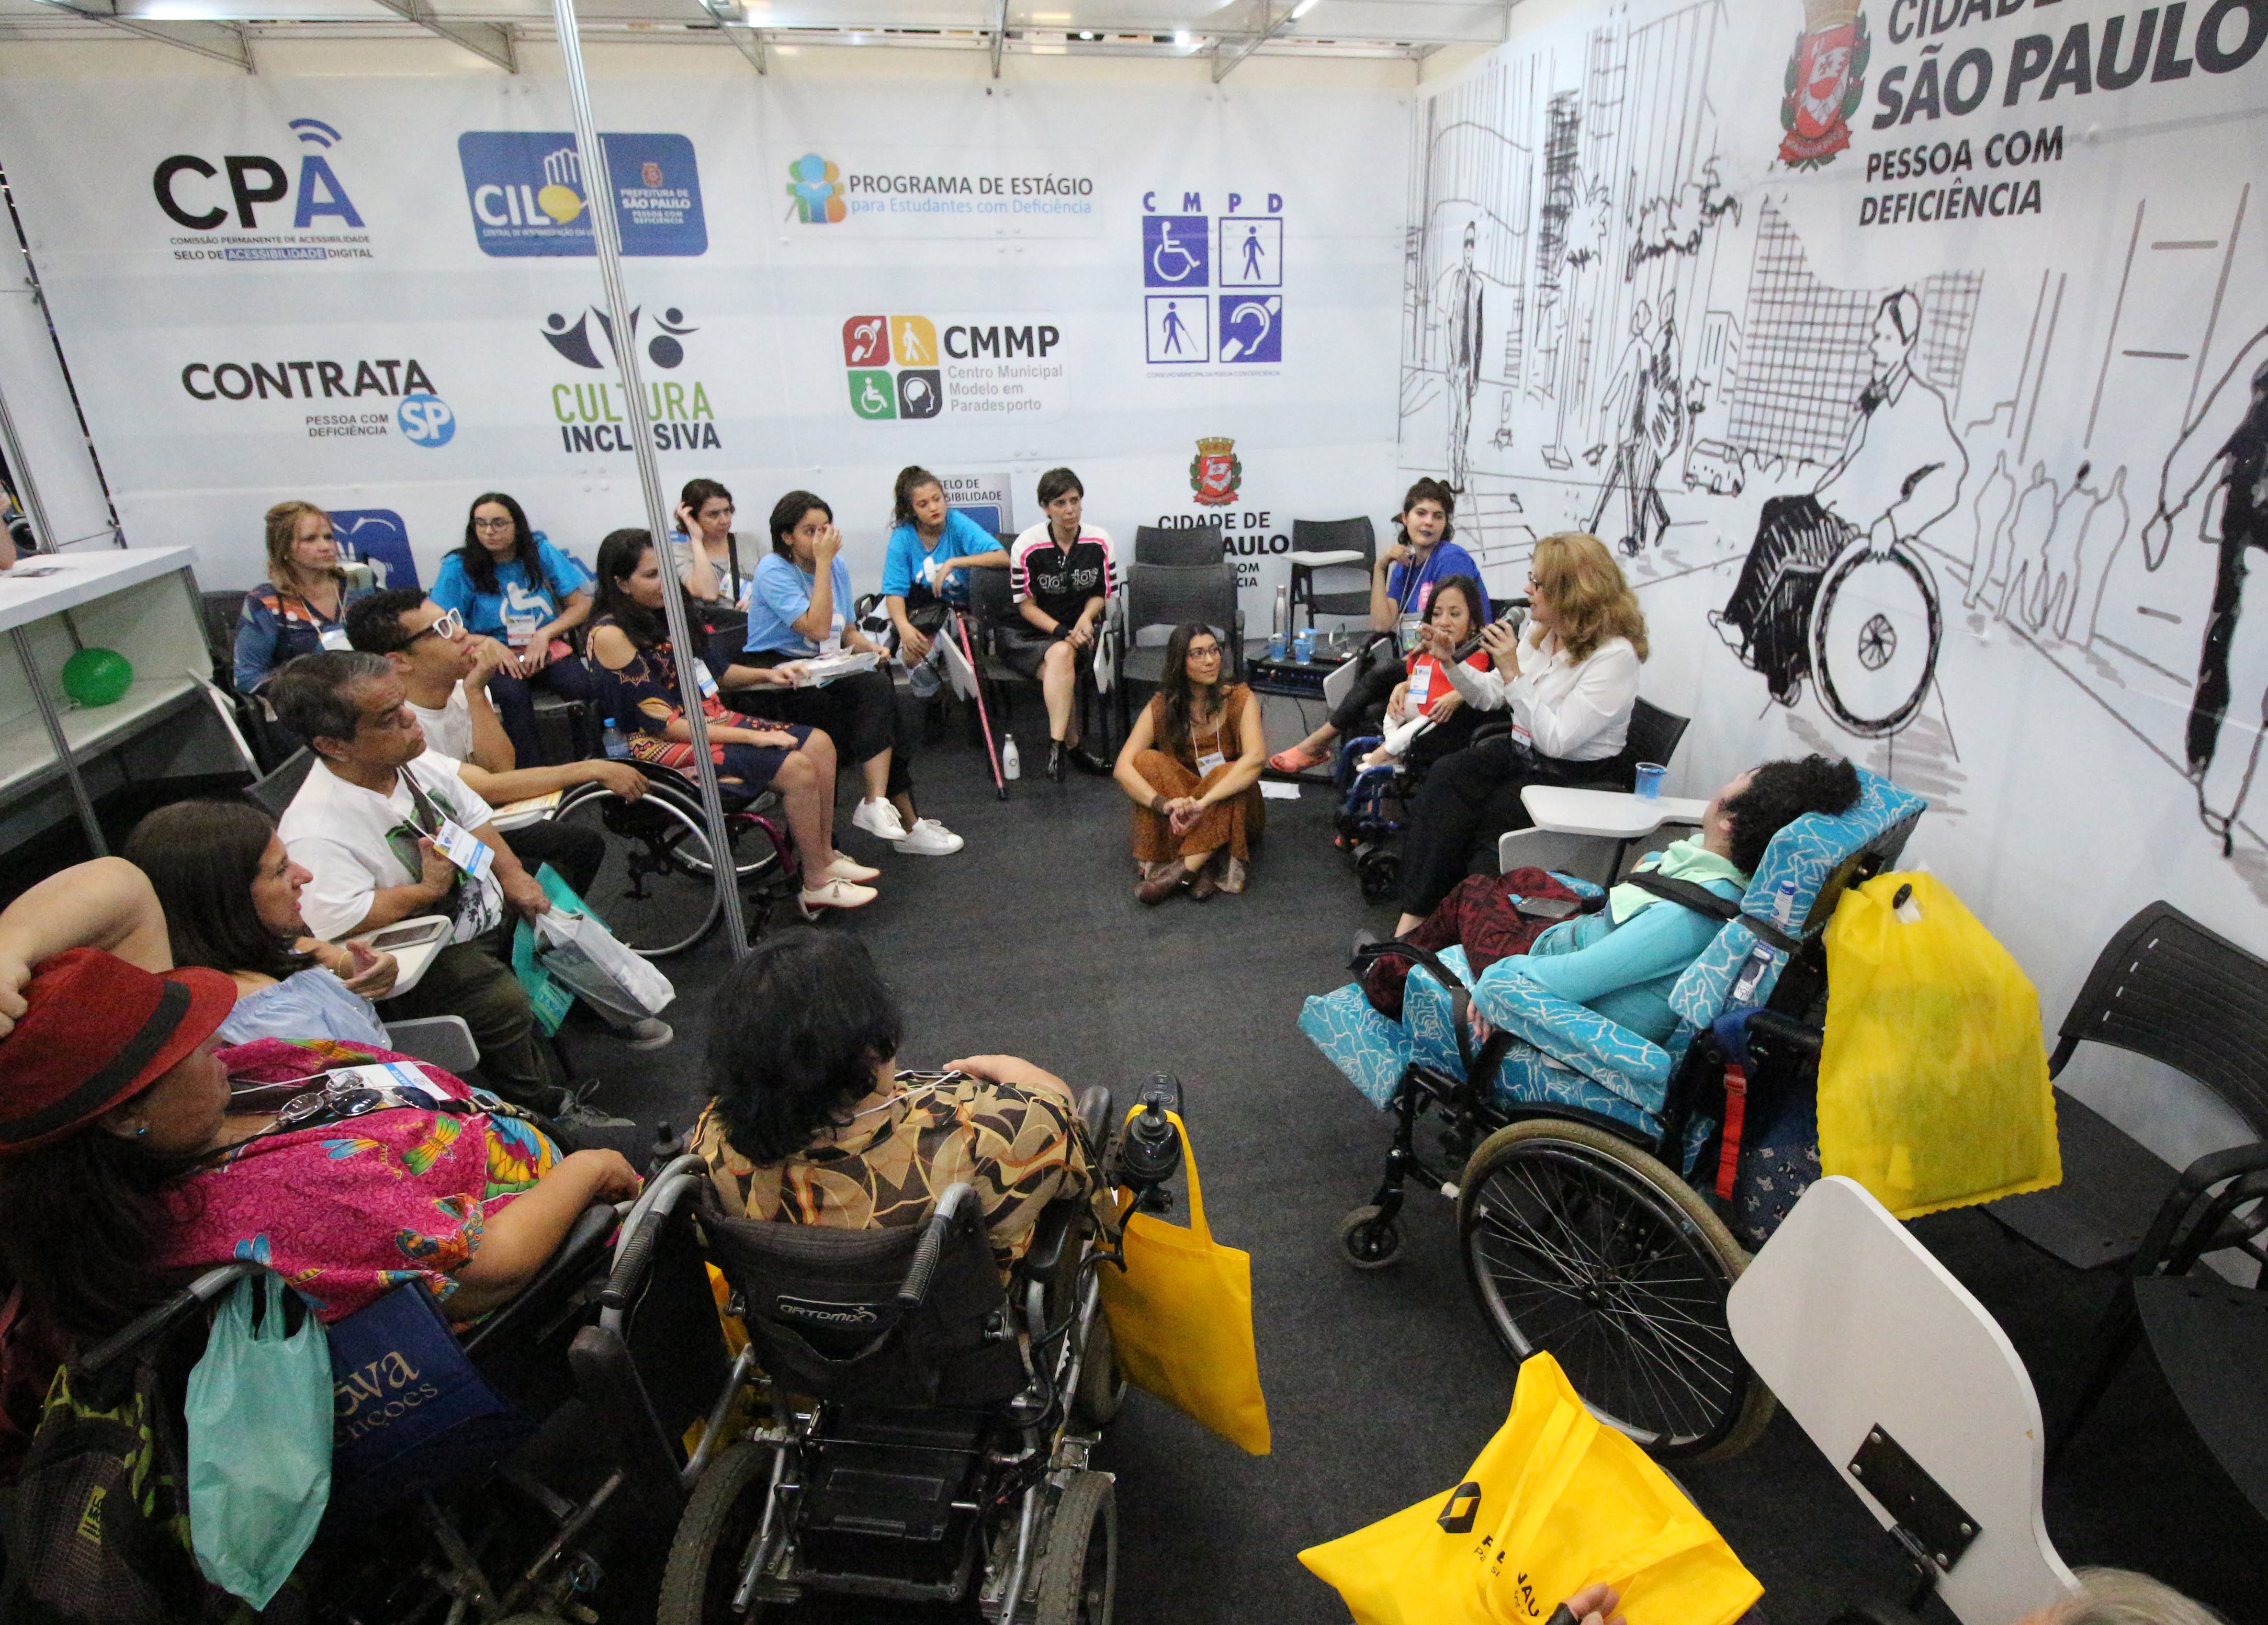 Roda de conversa sobre Moda Inclusiva, na foto, pessoas sentadas formando um circulo, debatendo sobre o tema.